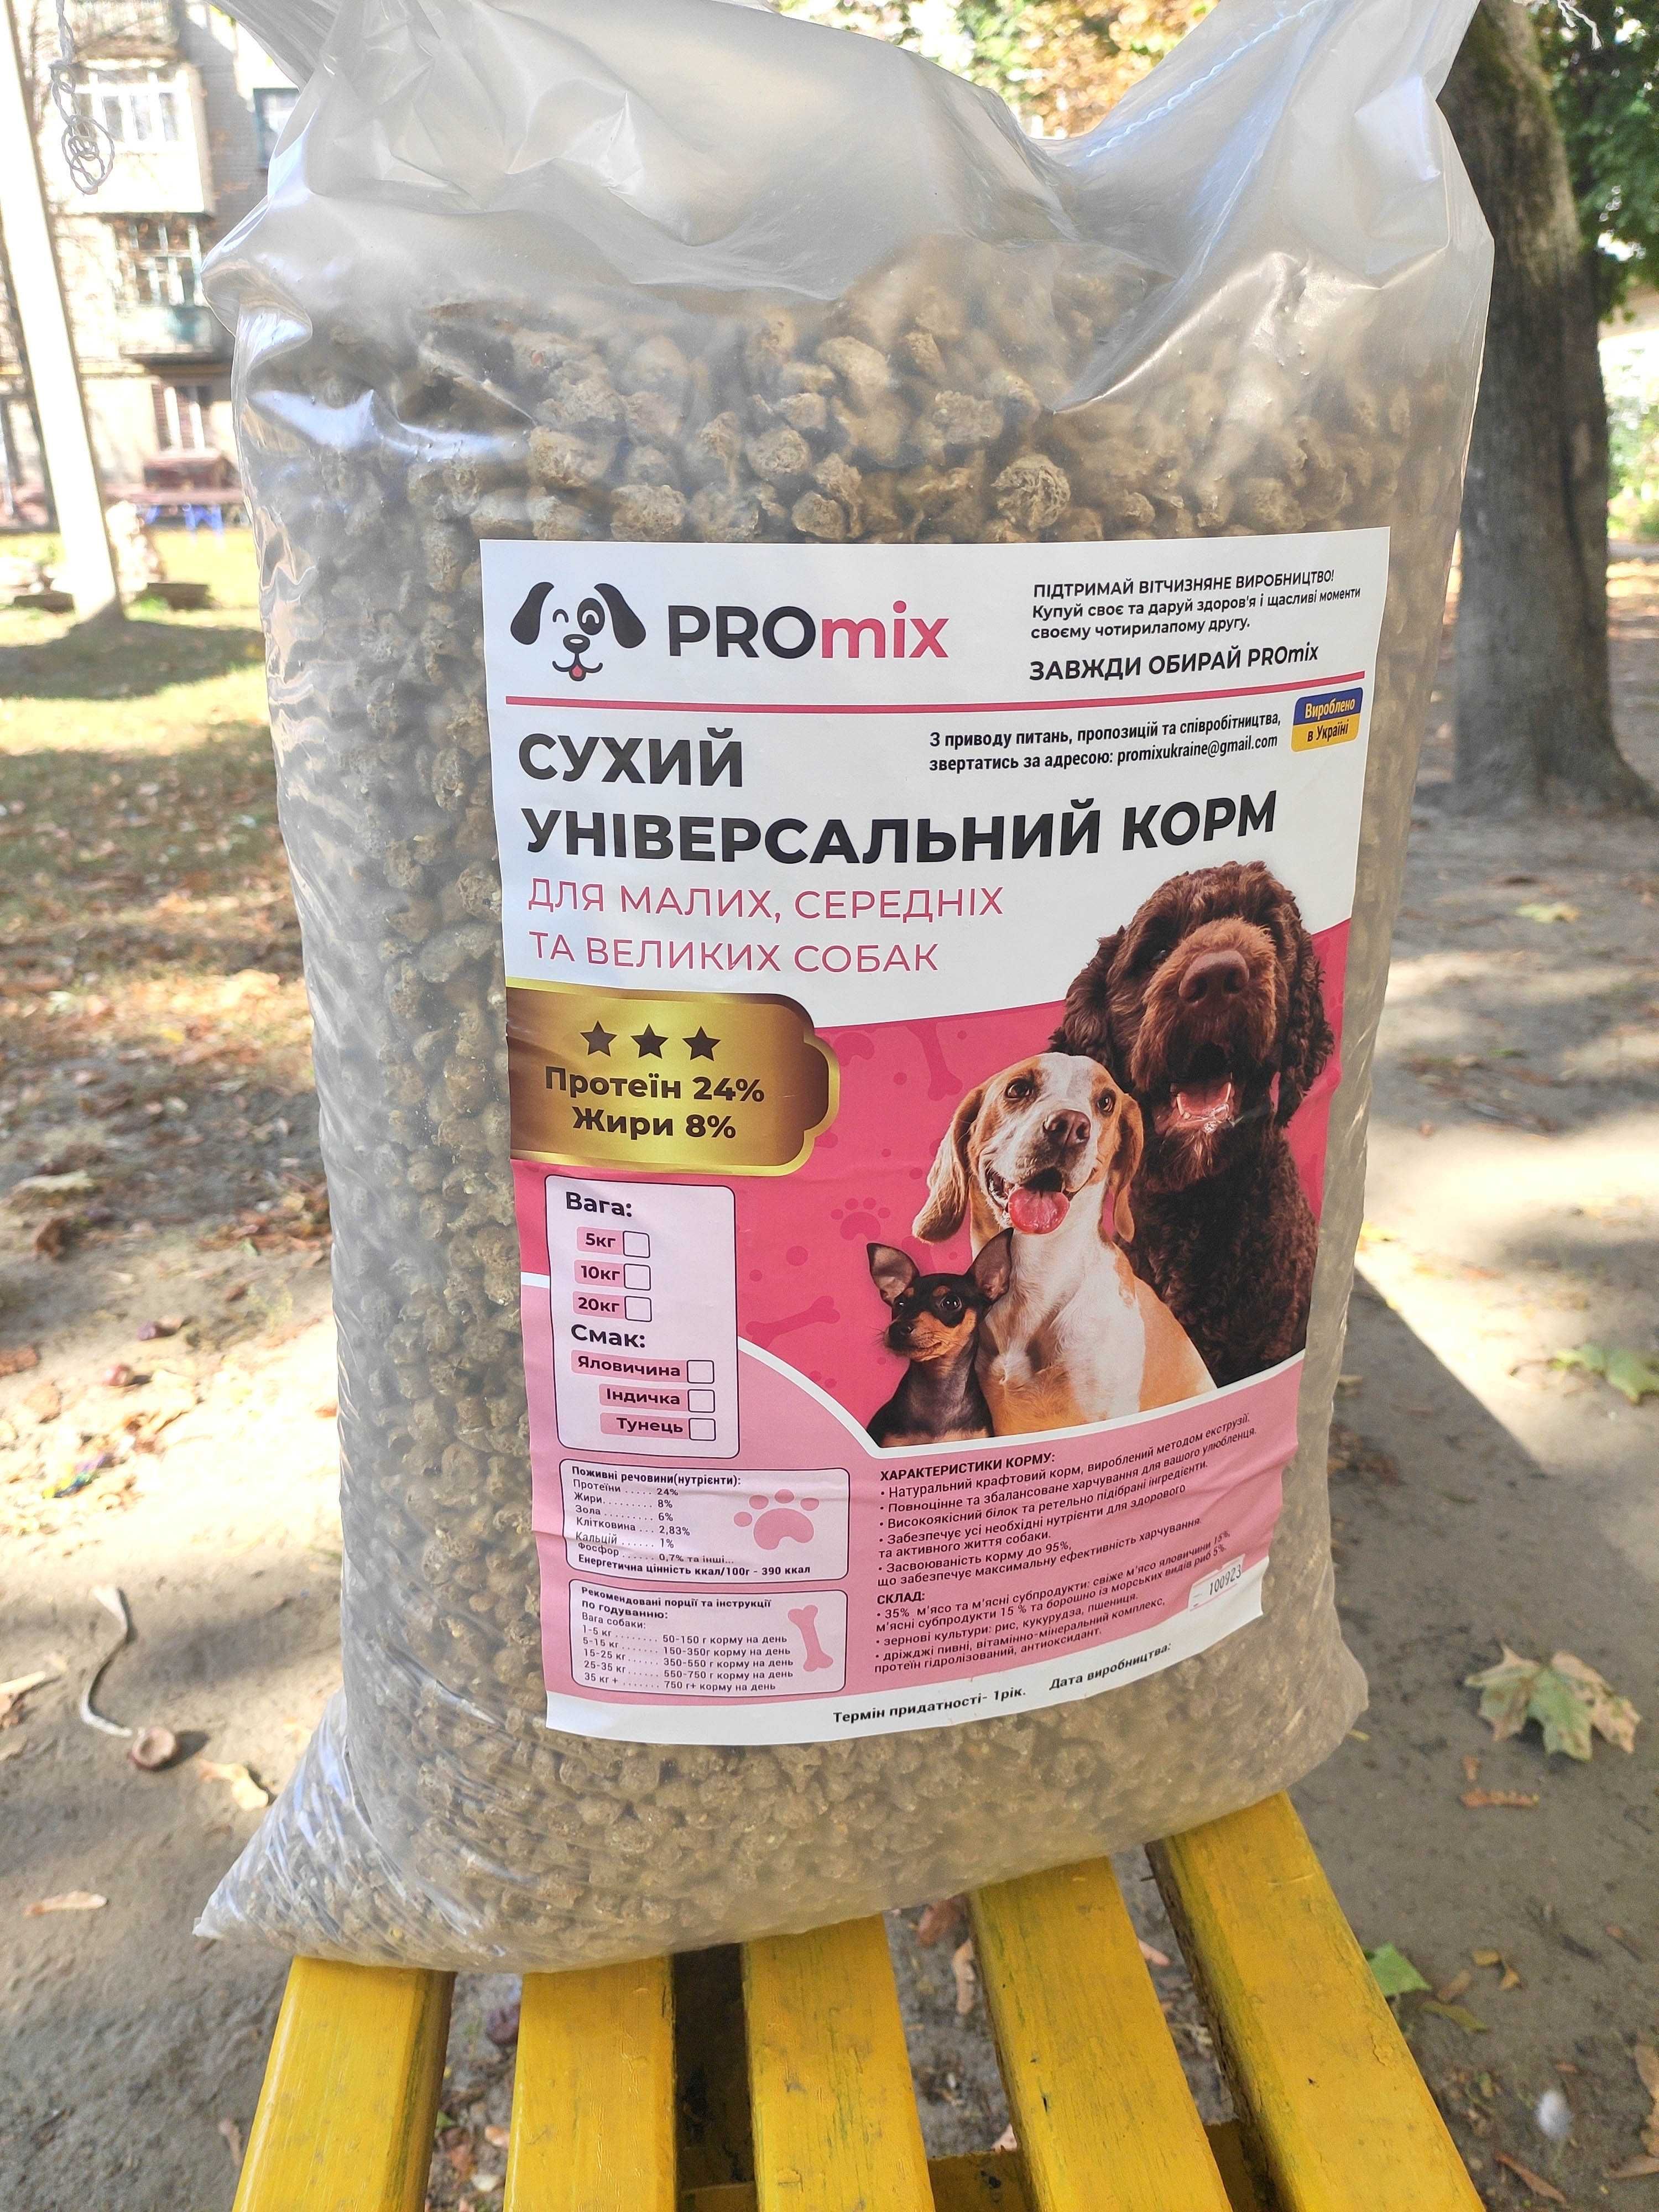 PROmix. Універсальний сухий  корм для собак. Фасовка 5, 10, 20 кг.